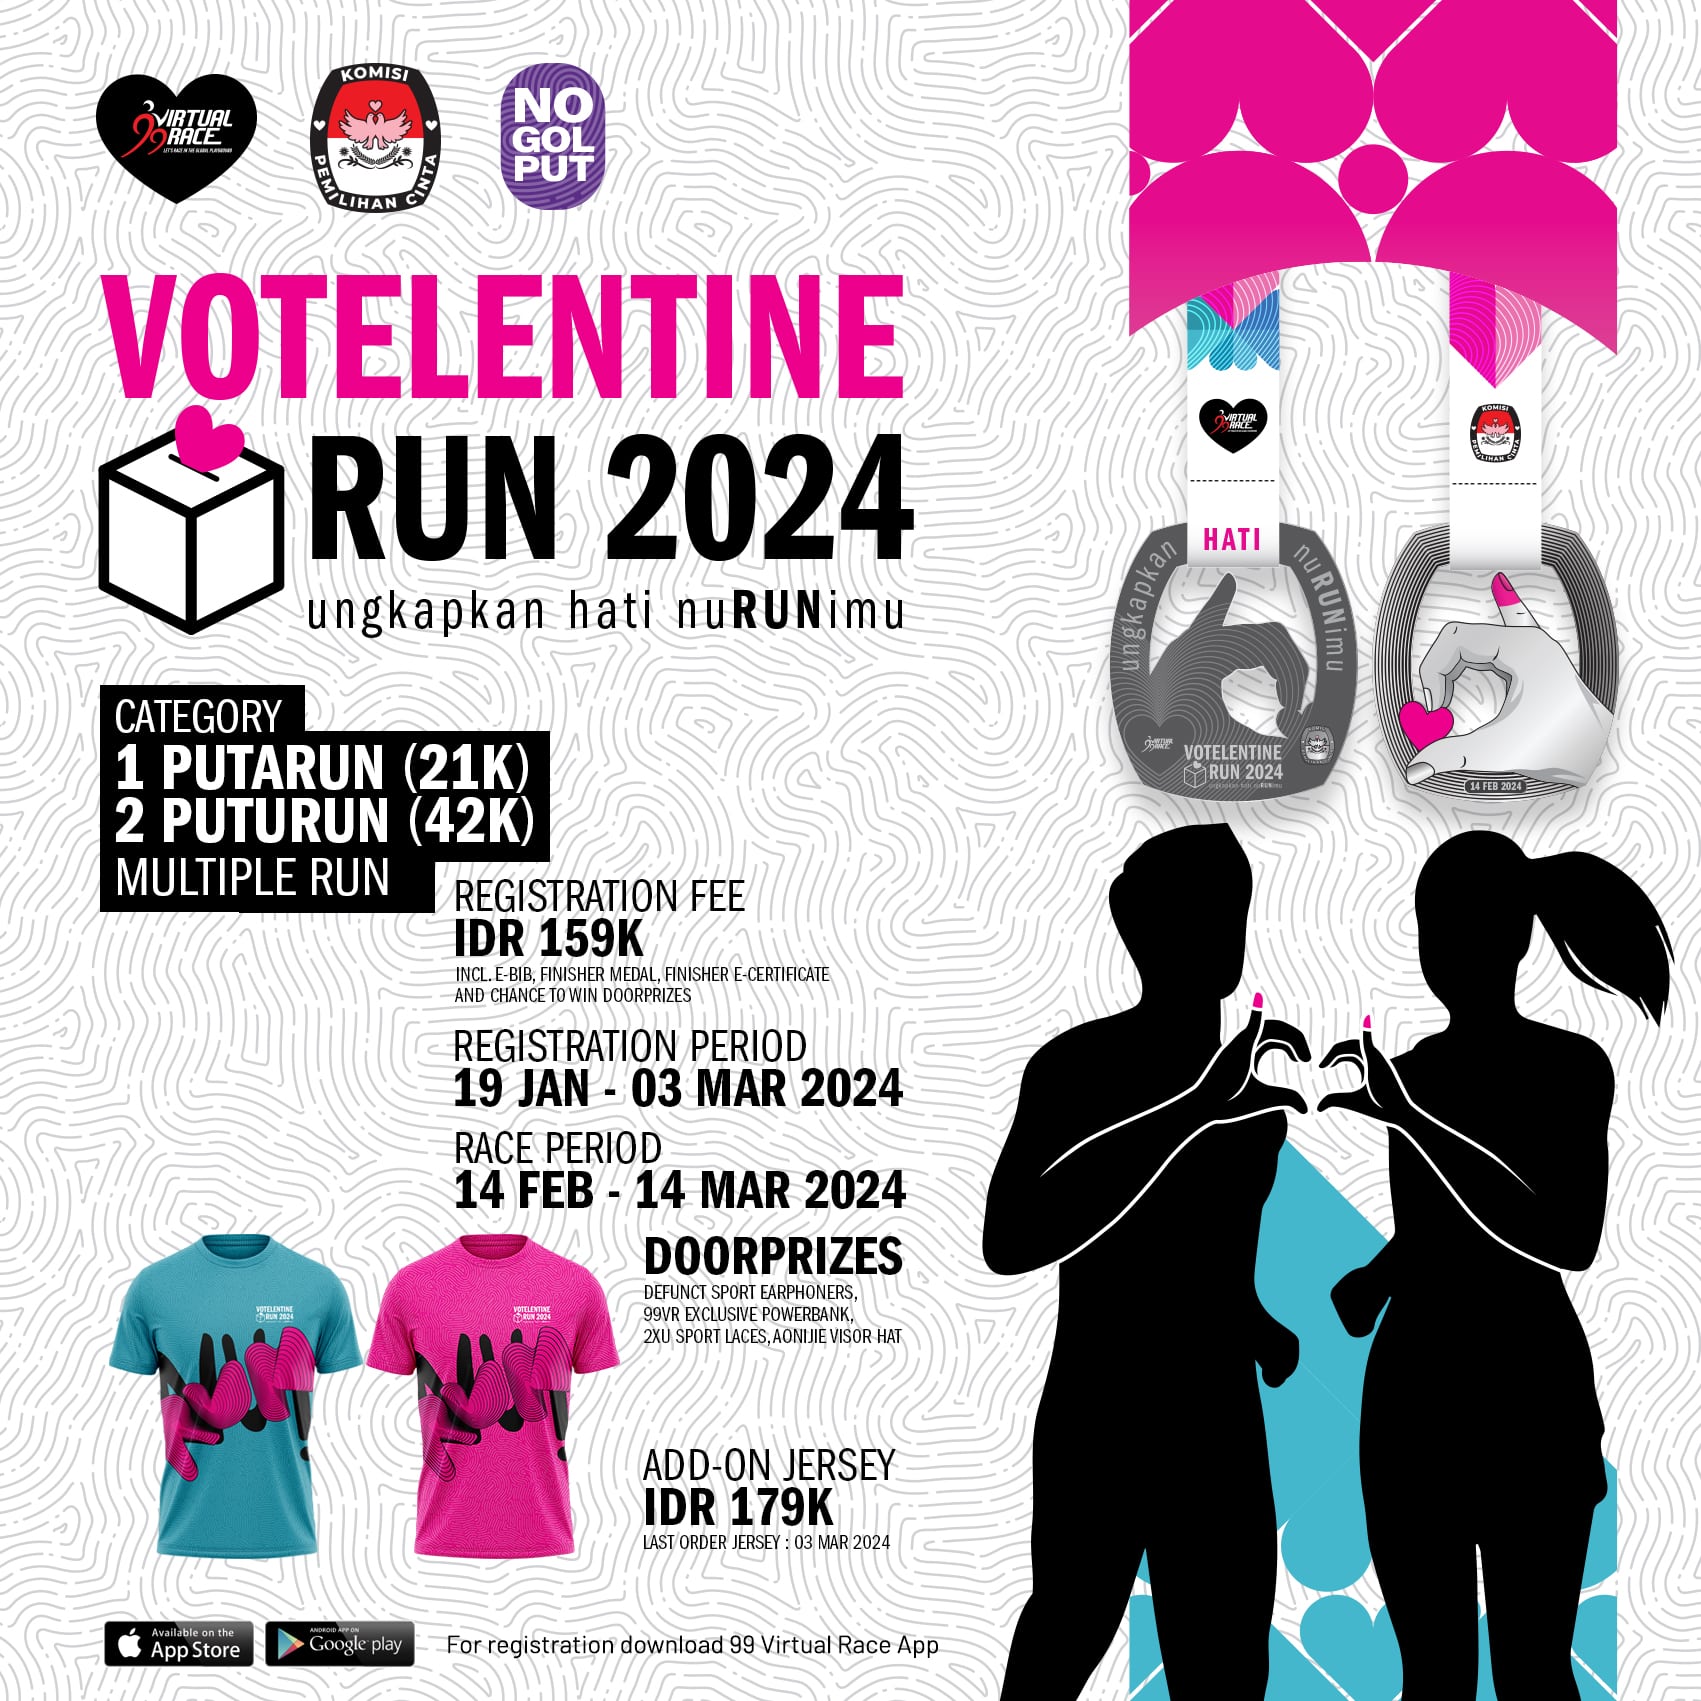 Votelentine Run 2024